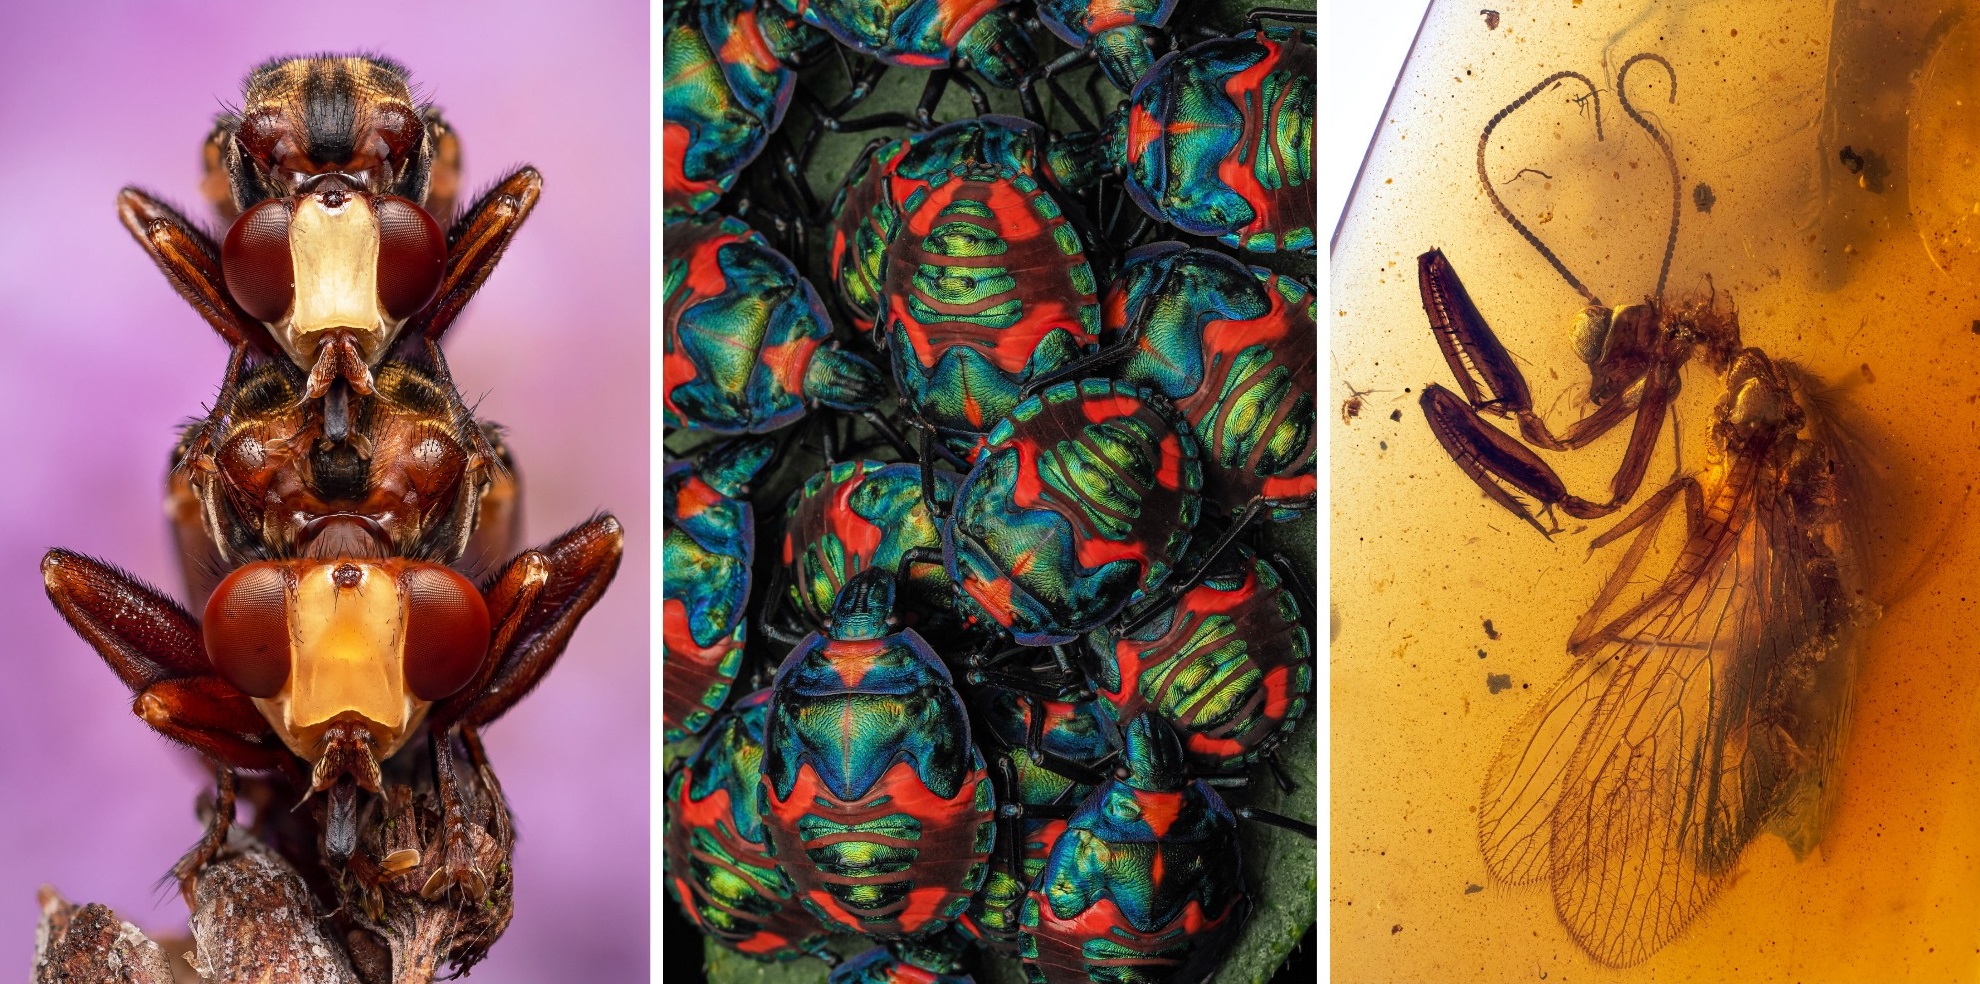 Спящие пчёлы-кукушки и улыбка осы-землекопа: на Royal Entomological Society выбрали лучшие фото насекомых